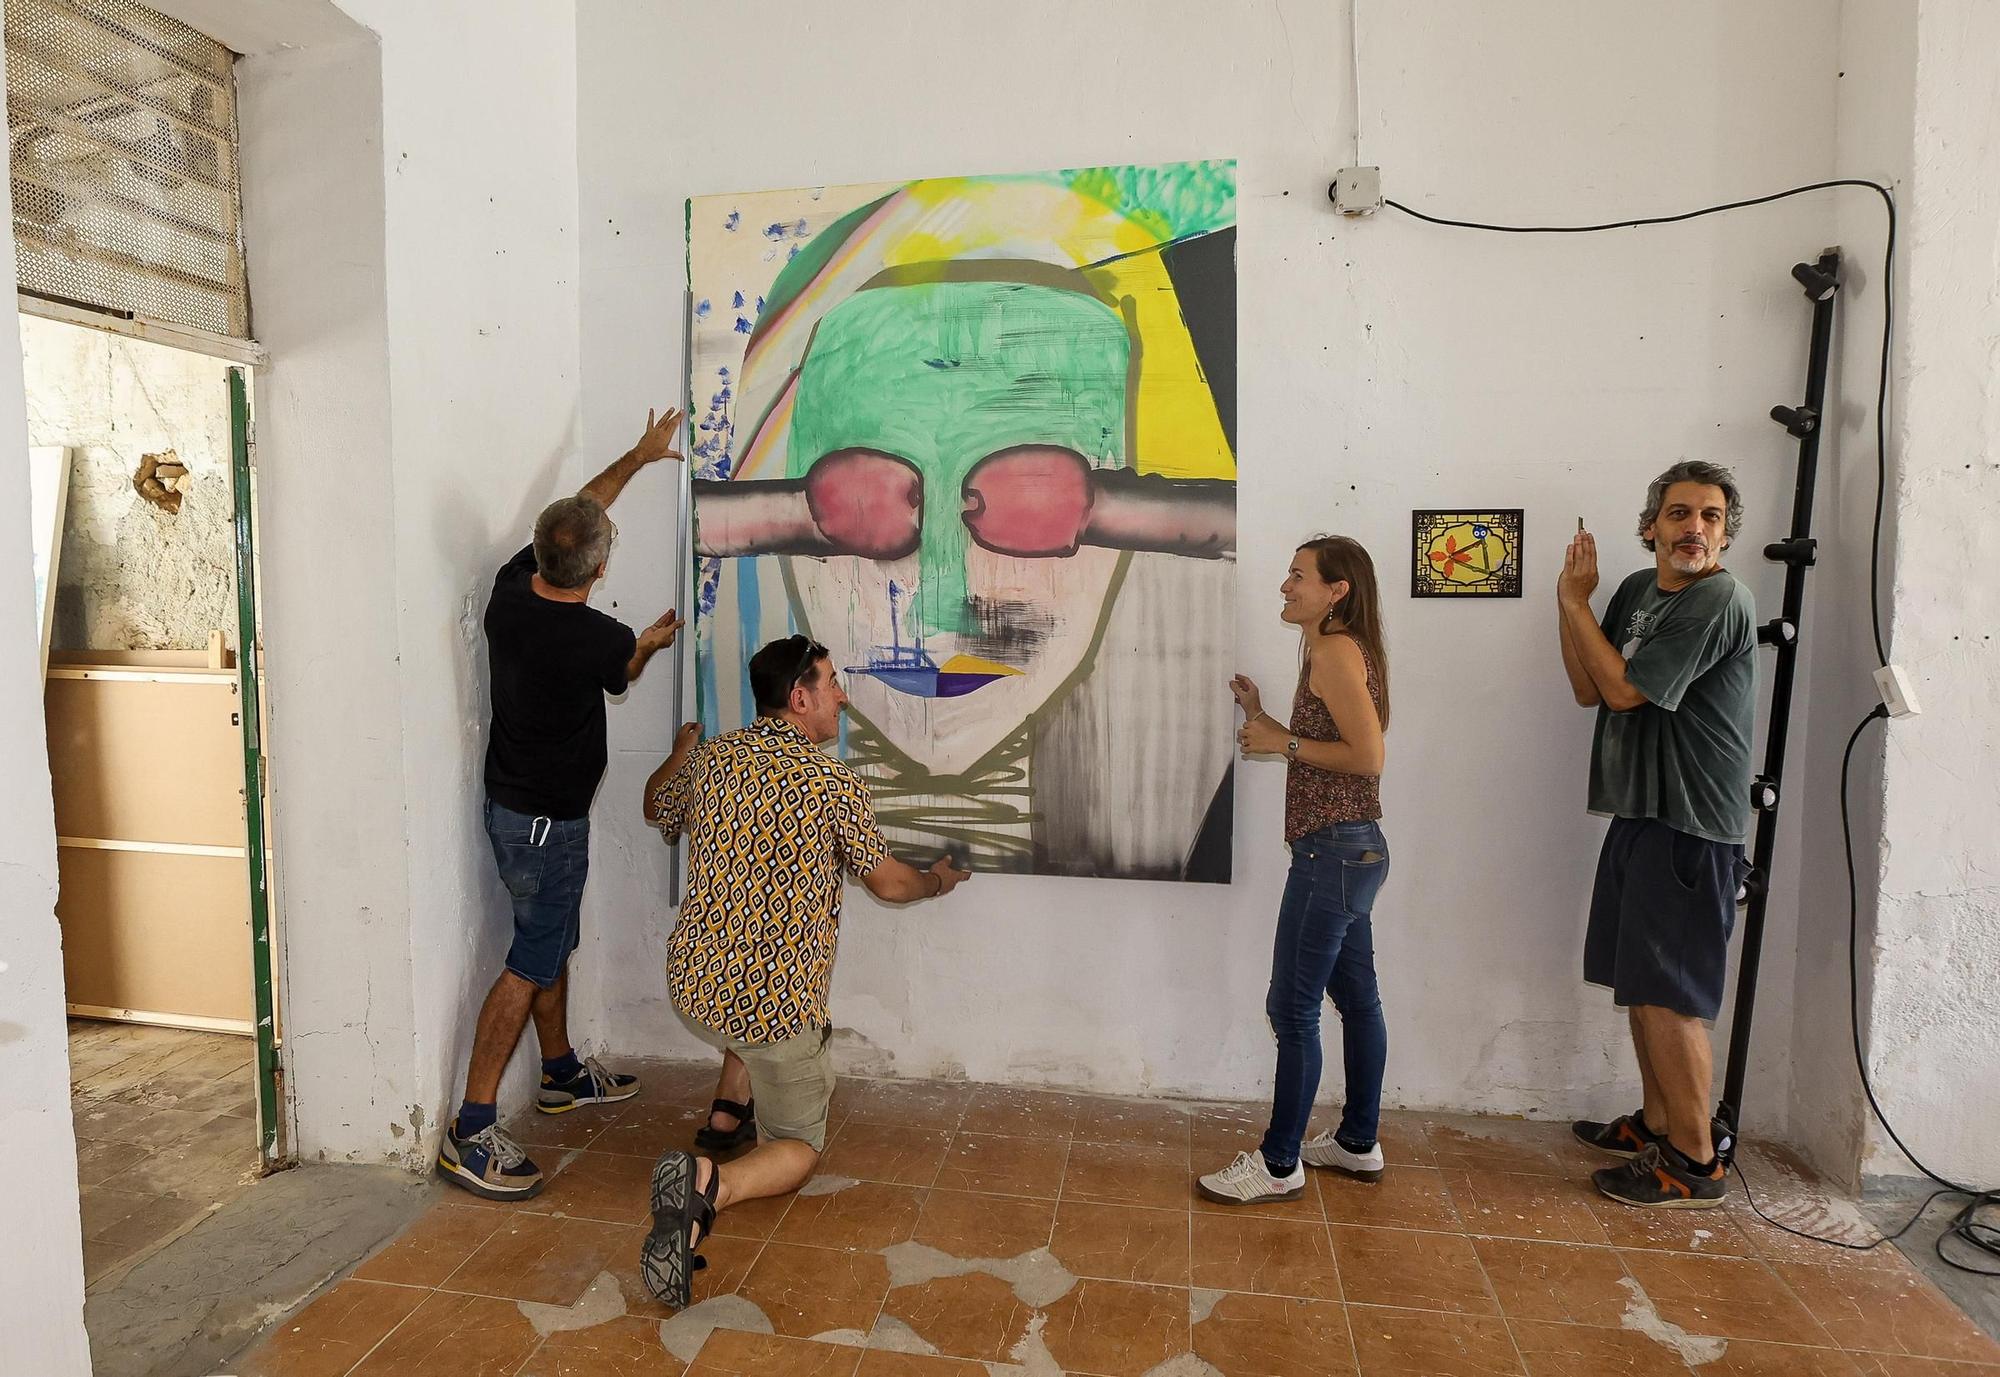 Siete artistas muestran sus obras del 22 al 24 de septiembre en el estudio del pintor alicantino David Delgado